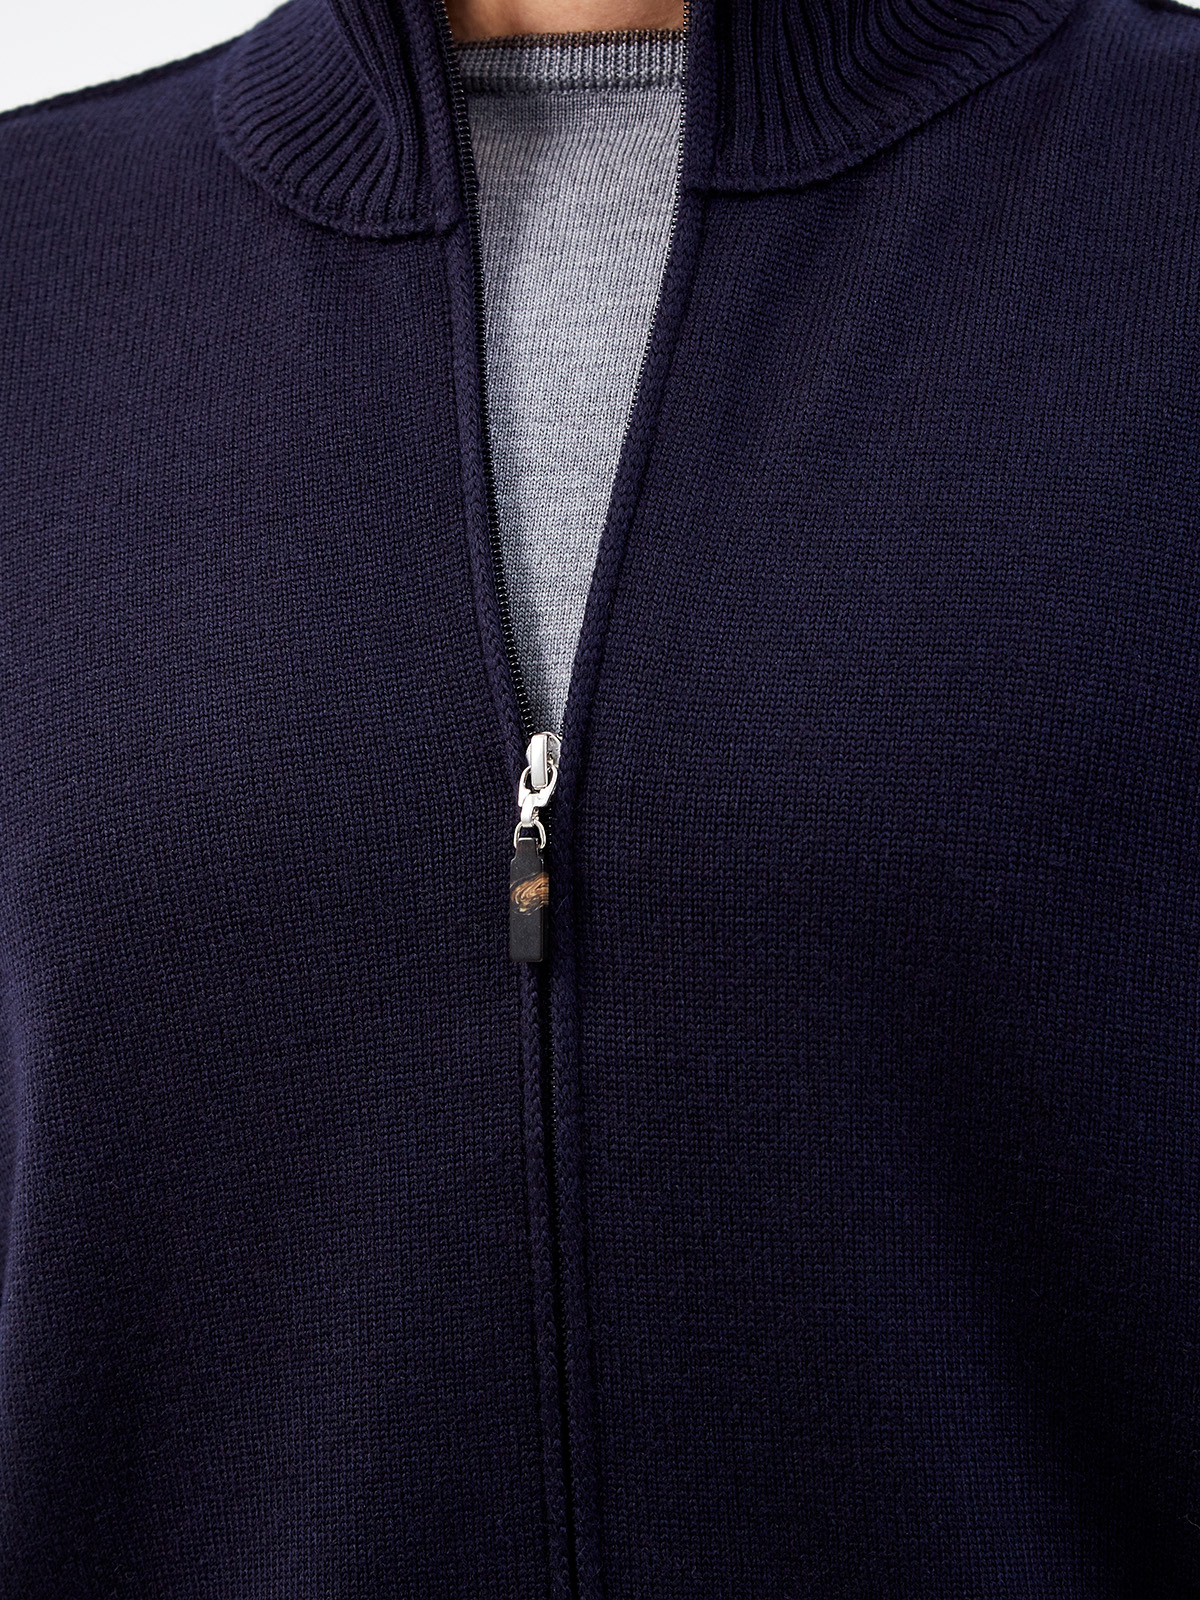 Шерстяной кардиган с объемными швами и застежкой на молнию GRAN SASSO, цвет синий, размер 46;52;54;56;58;48 - фото 5